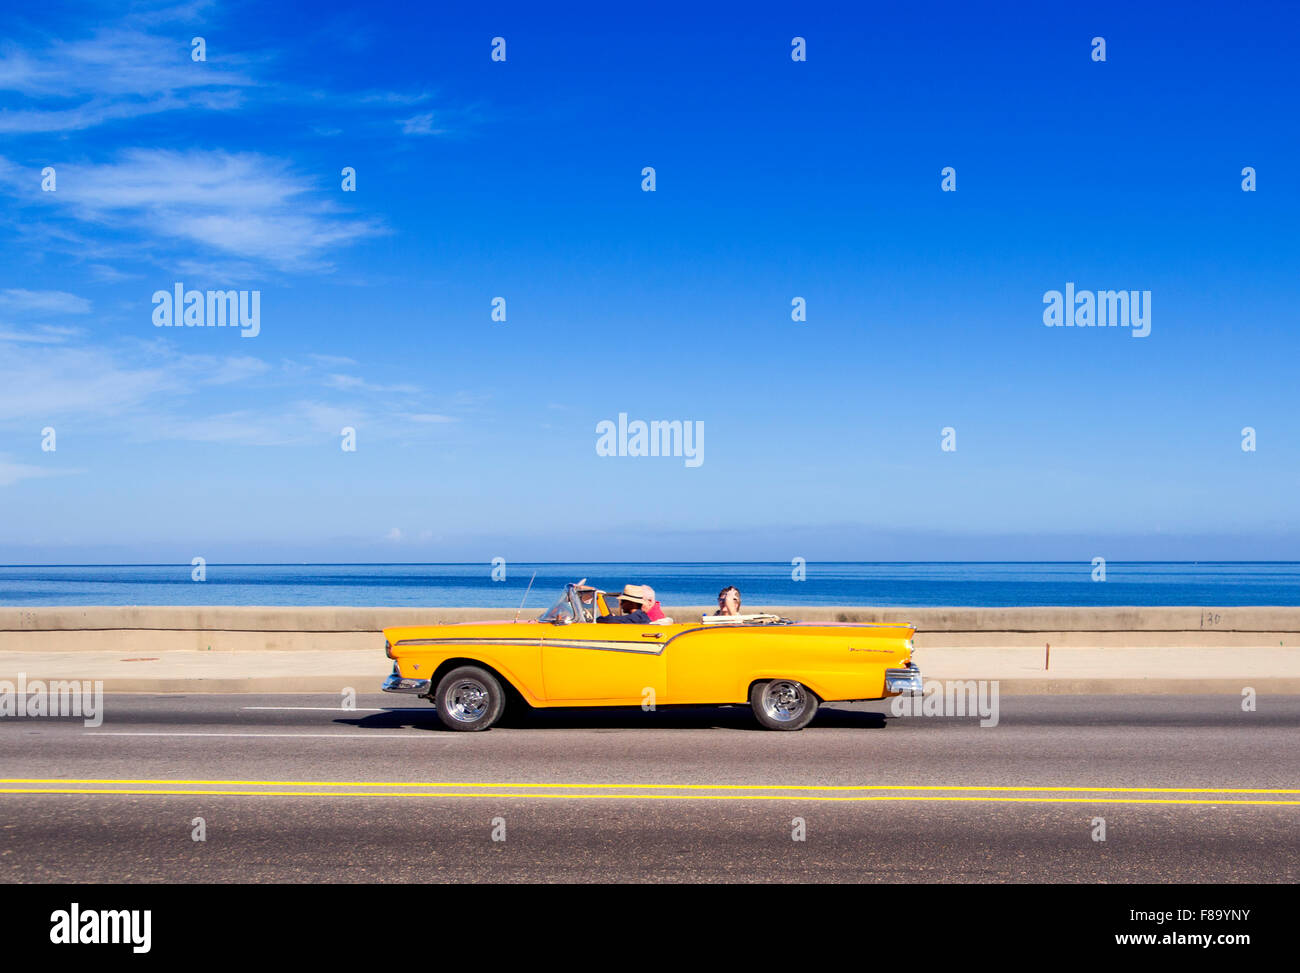 La Habana, Cuba - Noviembre 9, 2015 : coches clásicos americanos en la avenida Malecón Foto de stock